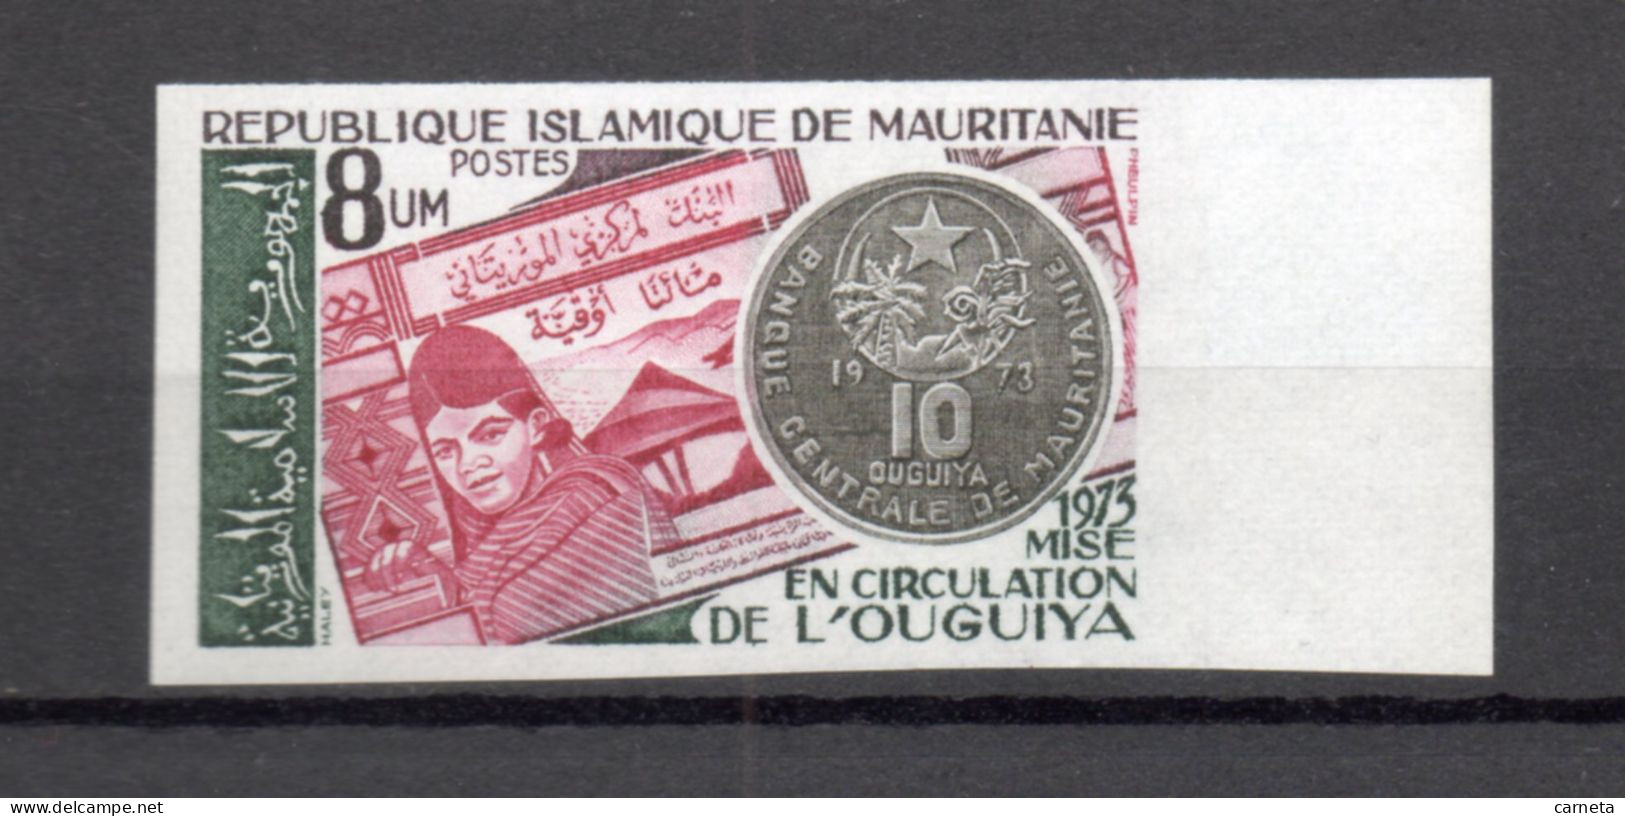 MAURITANIE    N° 322  NON DENTELE    NEUF SANS CHARNIERE   COTE ? €    MONNAIE - Mauretanien (1960-...)